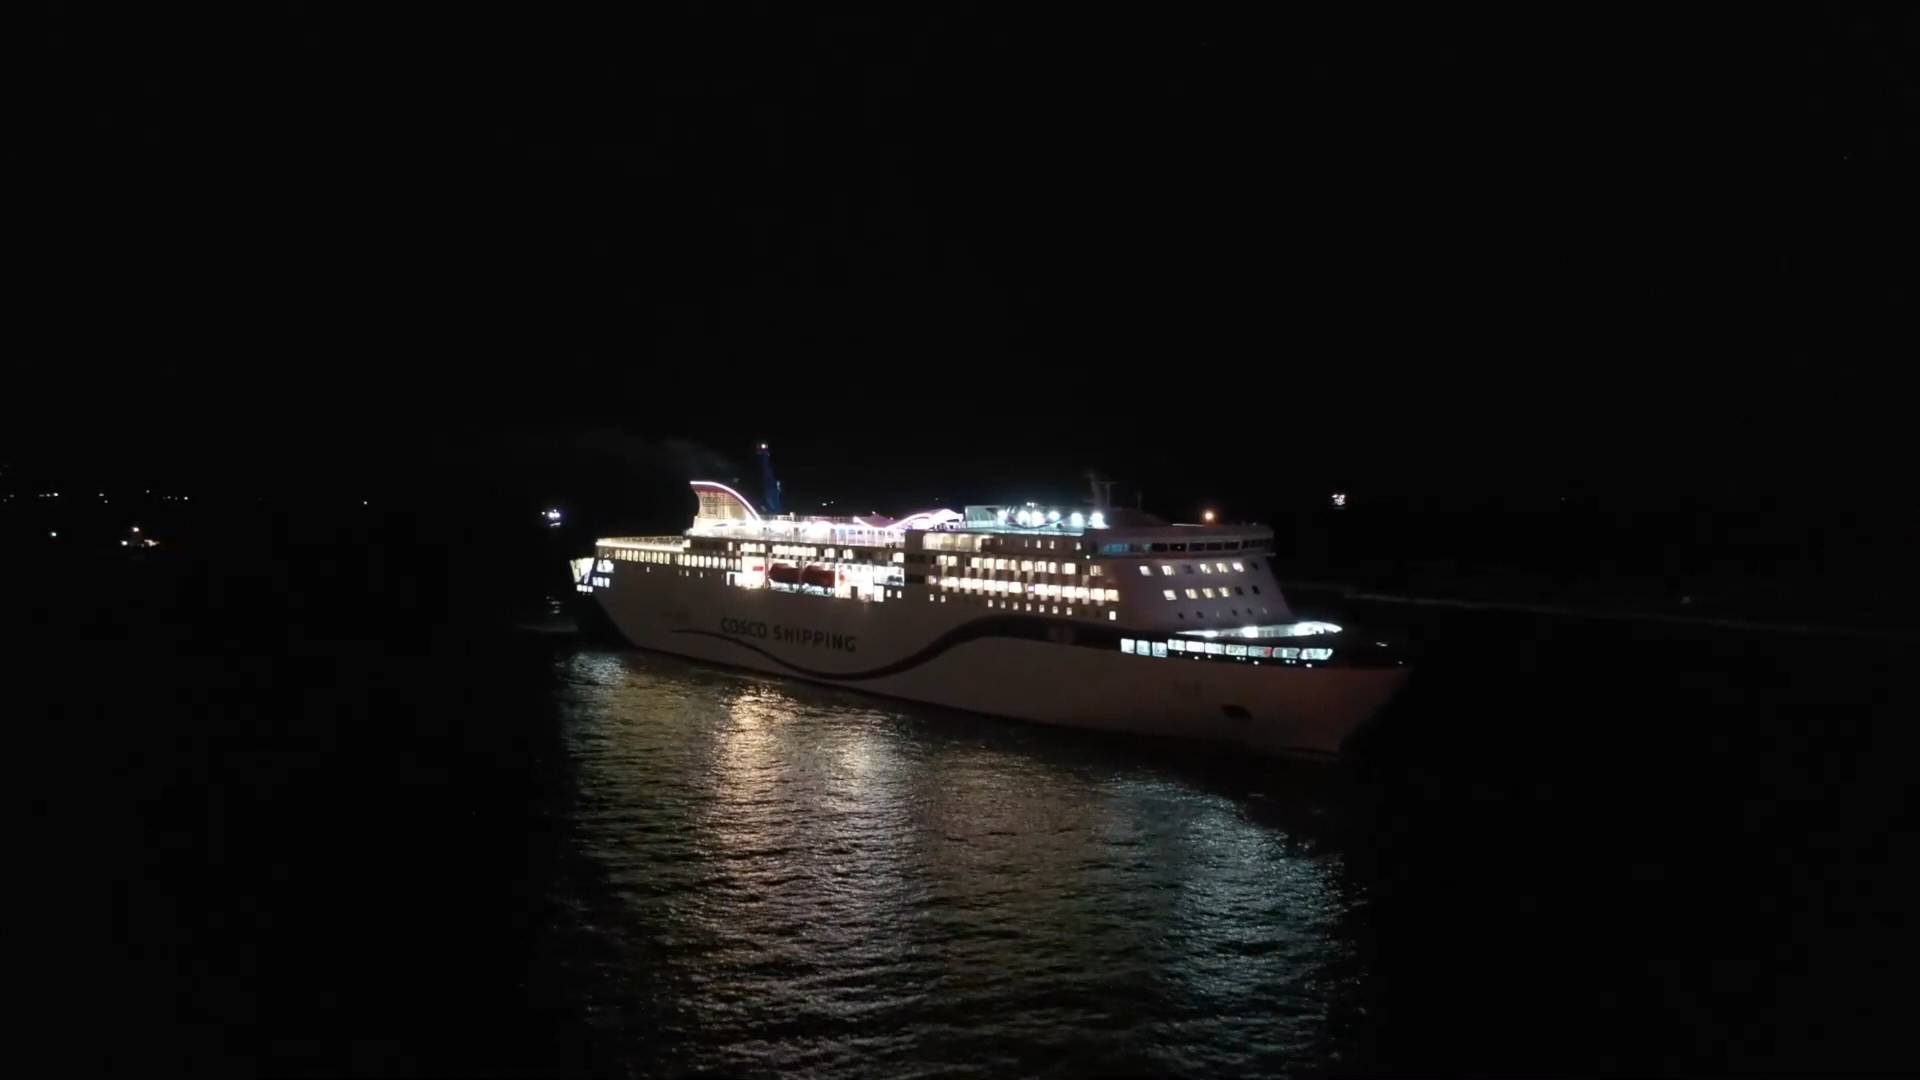 国内最先进的客滚船“吉龙岛”轮抵达烟台港 渤海“黄金水道”再添豪华客轮